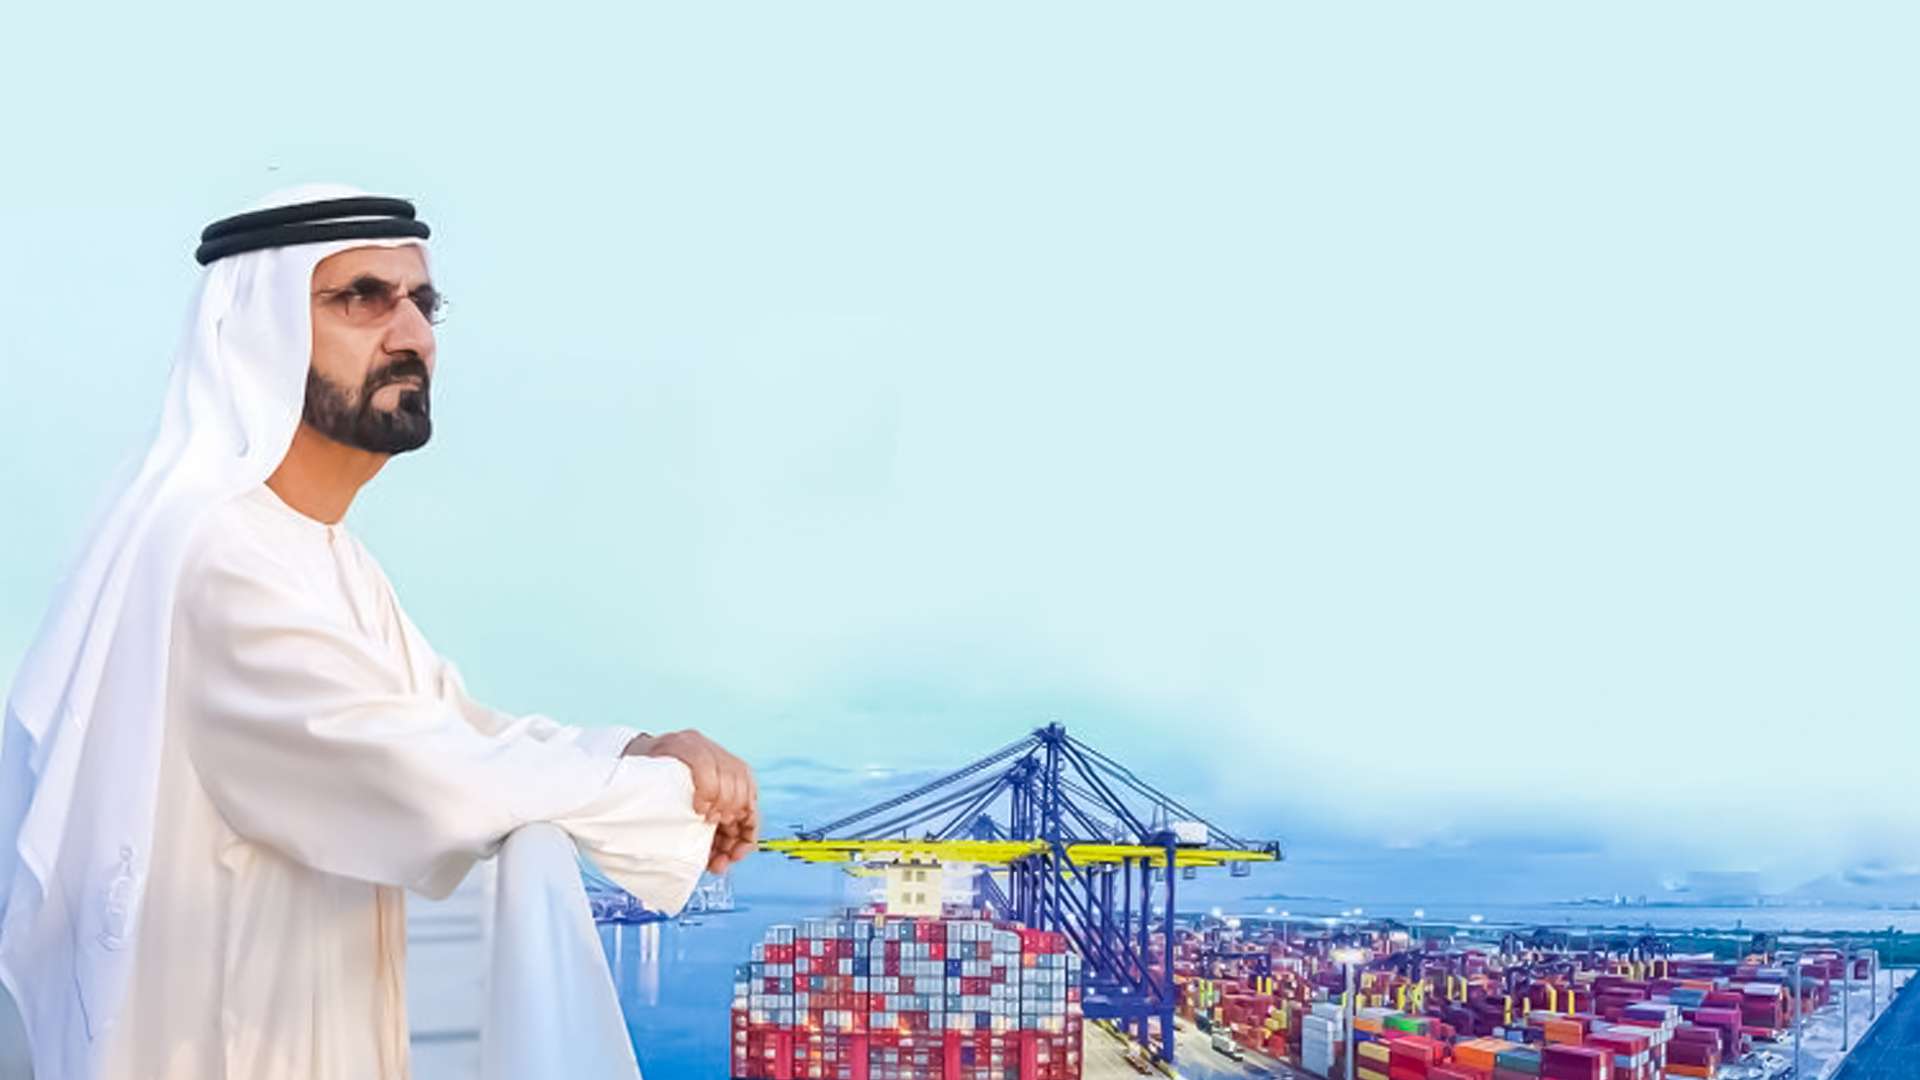 الإمارات تحدد 5 أولويات حكومية خلال 2023 تضمنت توسيع الشراكات الاقتصادية وتطوير التعليم